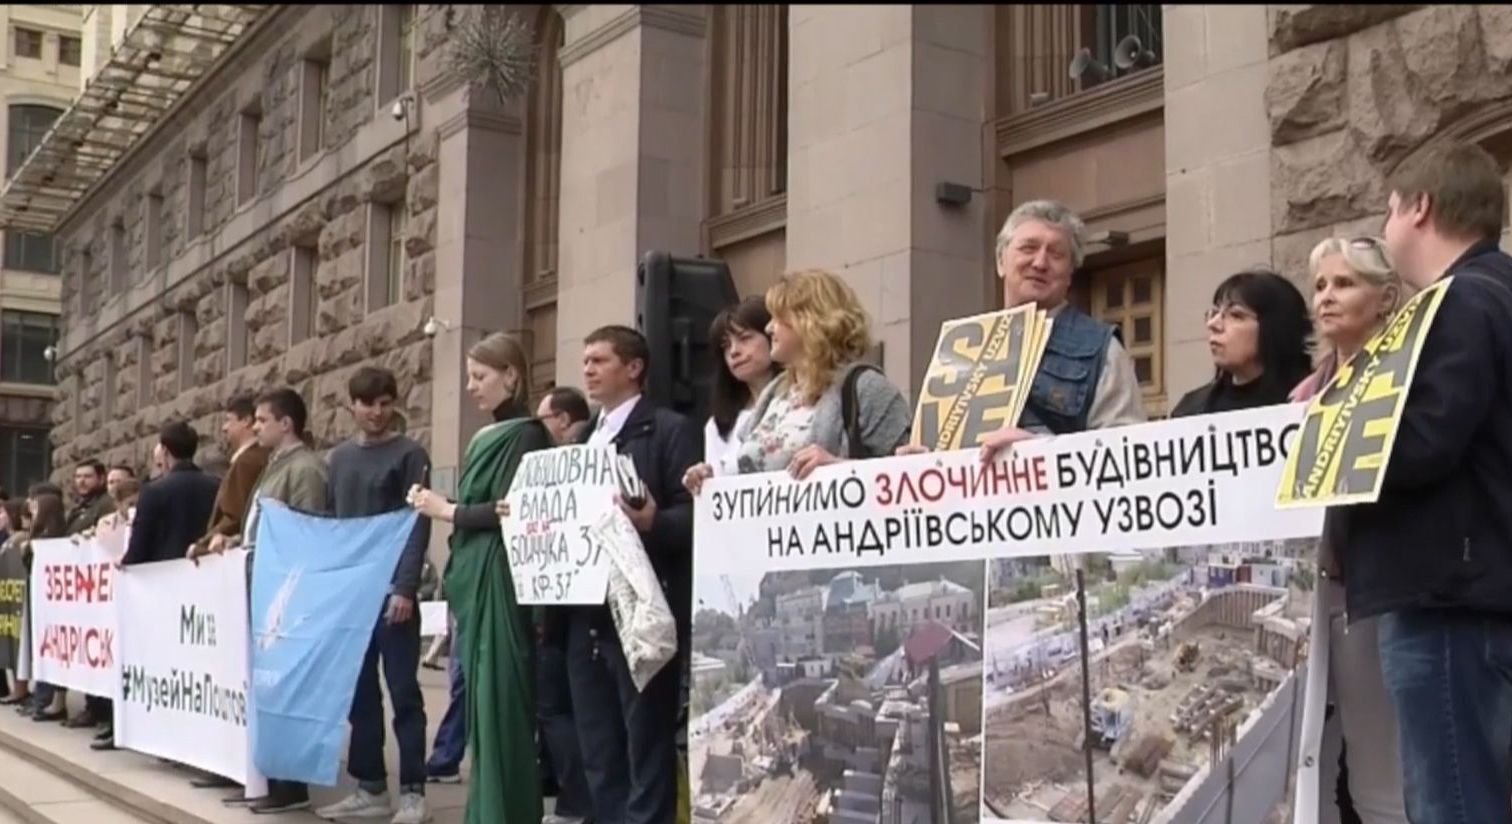 Киевляне протестуют под стенами мэрии, где решается судьба гостиницы на Андреевском спуске